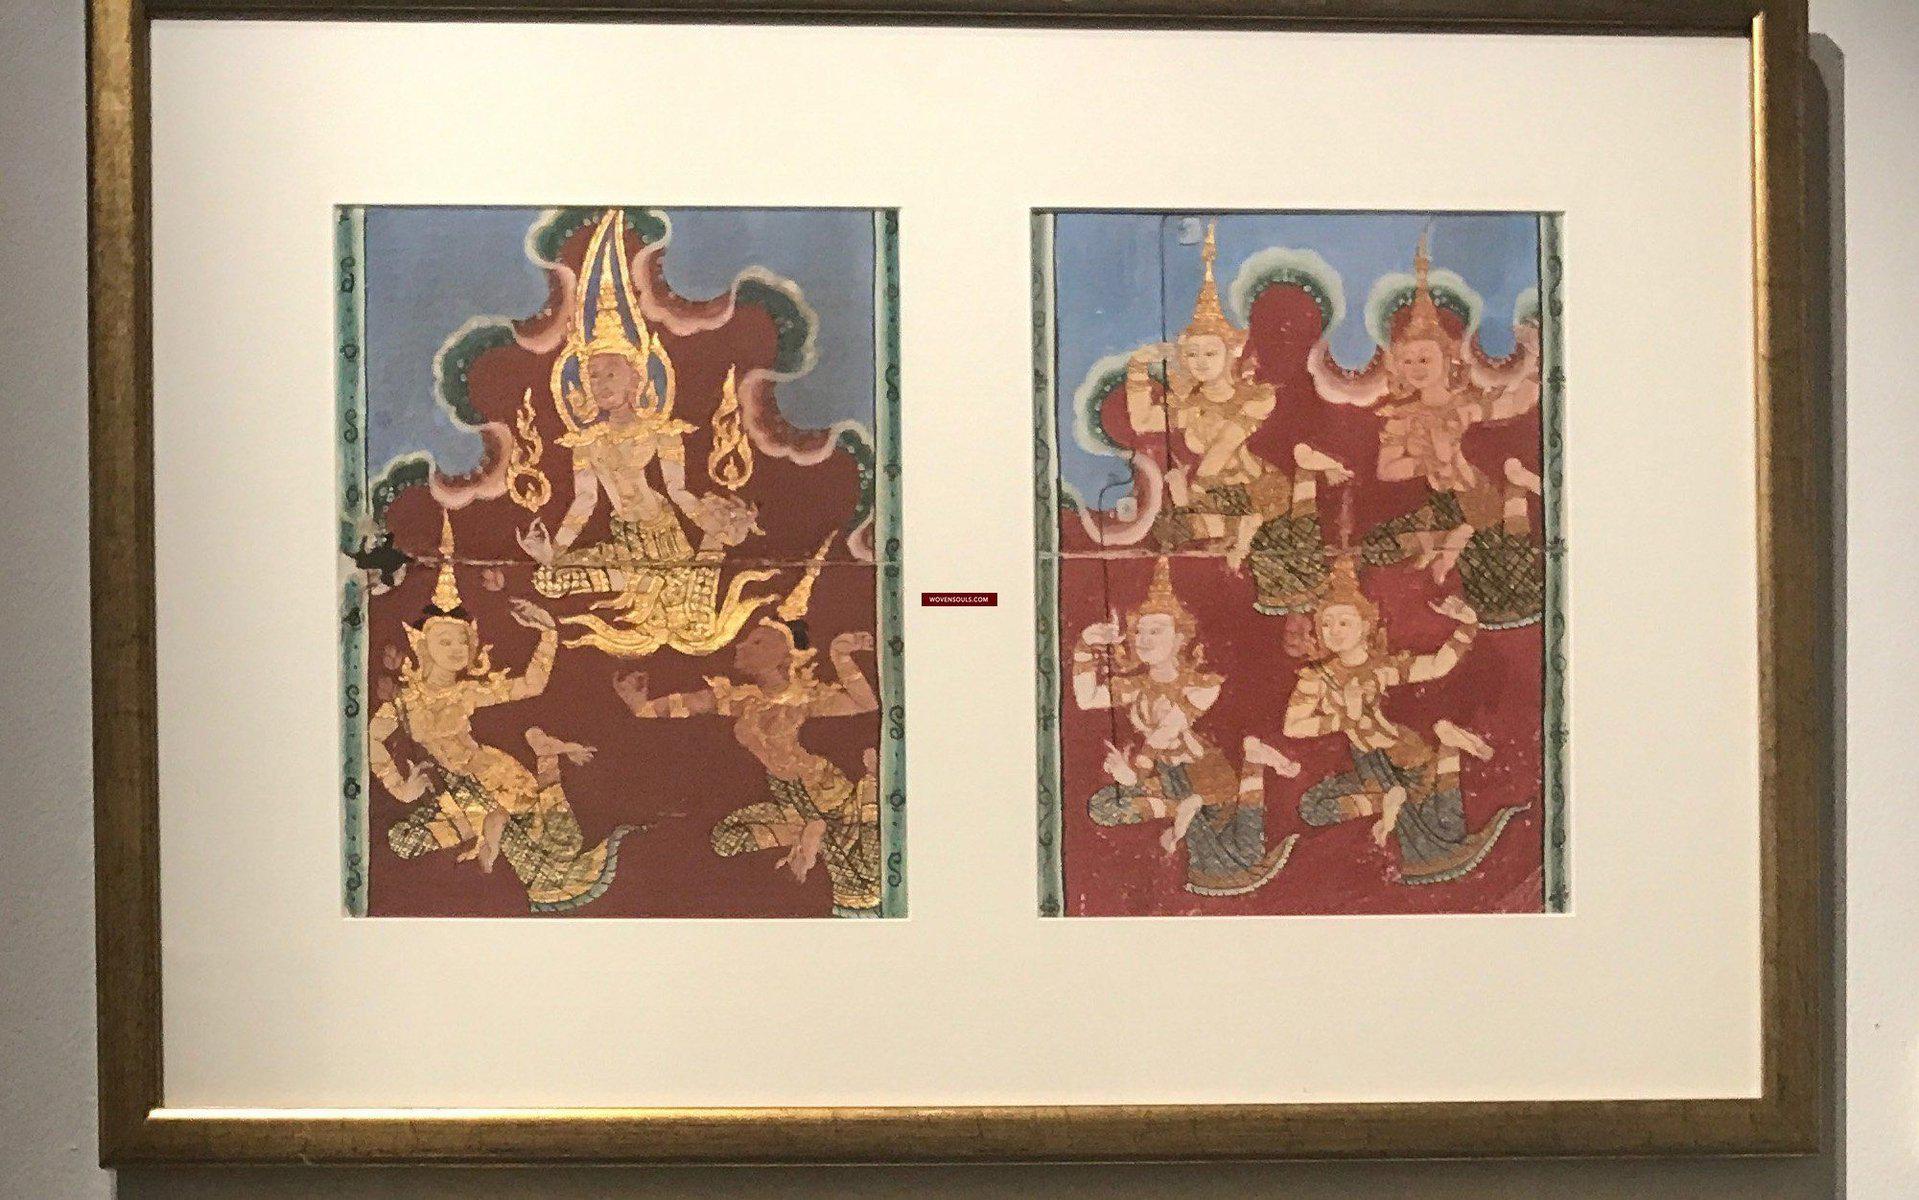 1226-B Antique Thai Painting from Phra Malai Manuscript-WOVENSOULS-Antique-Vintage-Textiles-Art-Decor